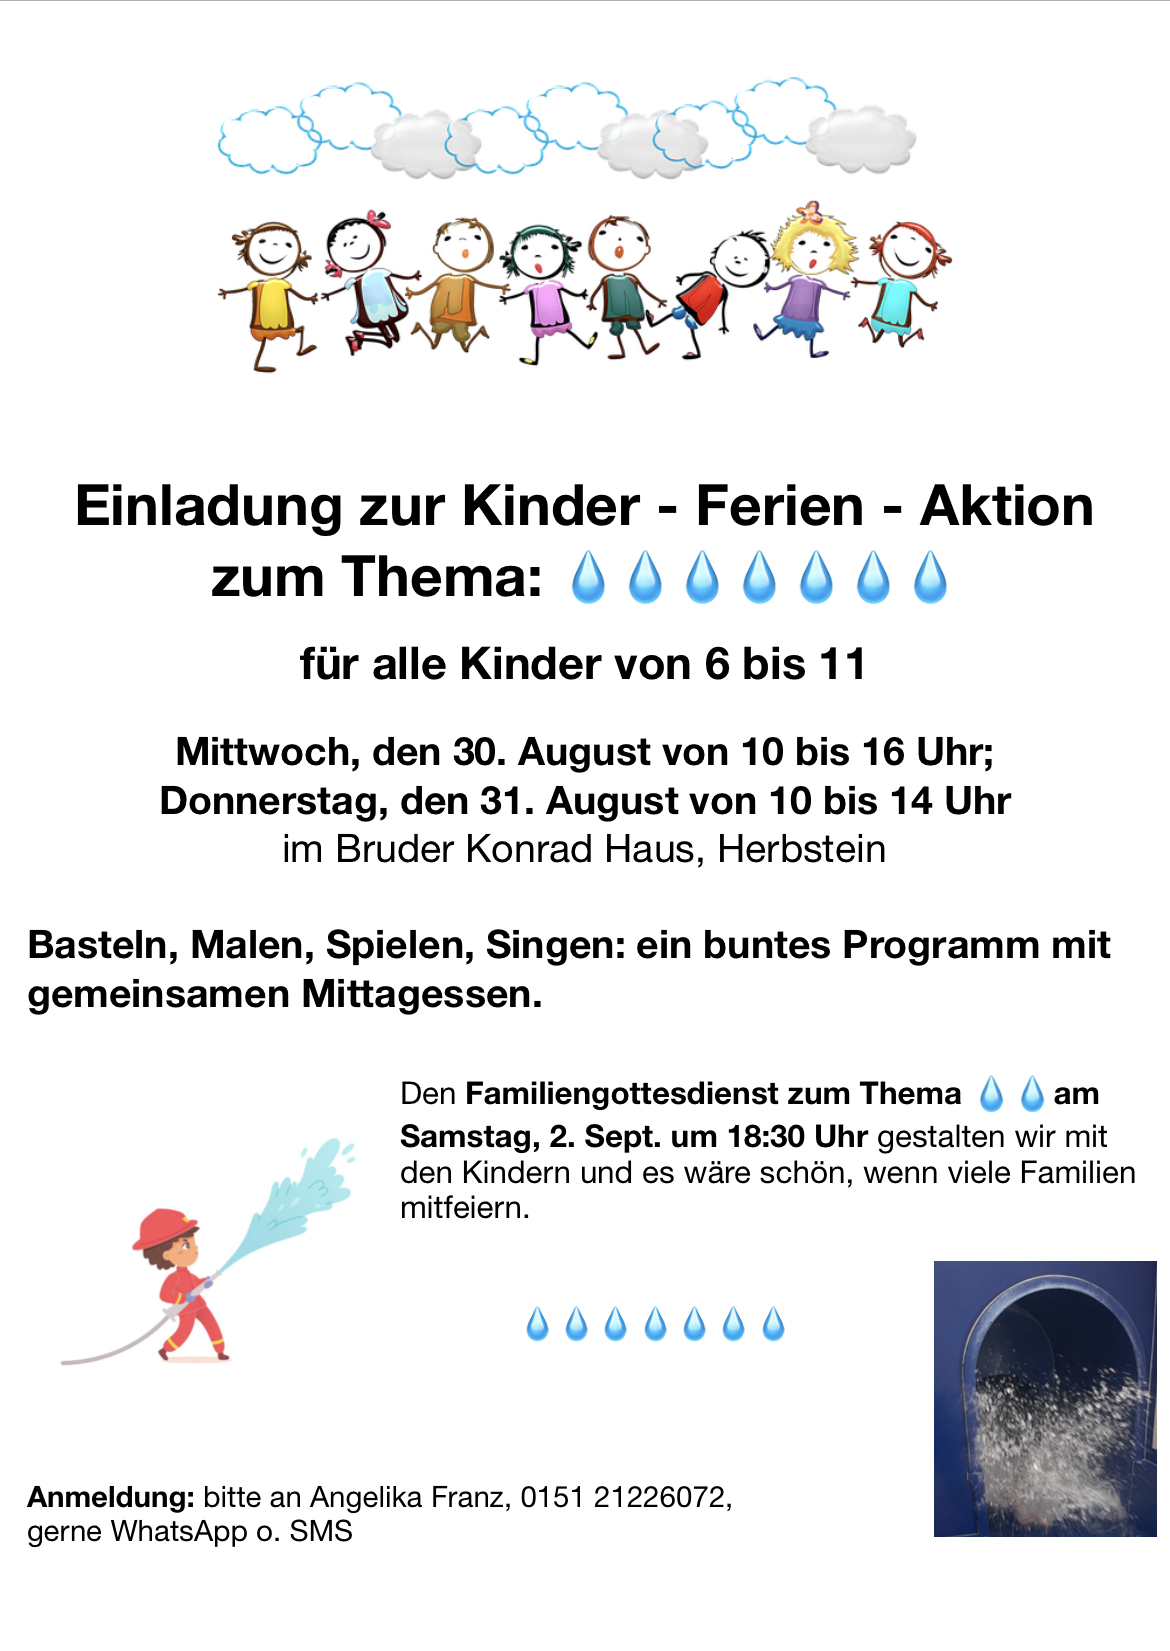 Einladung Kinder-Ferien-Aktion (c) A. Franz